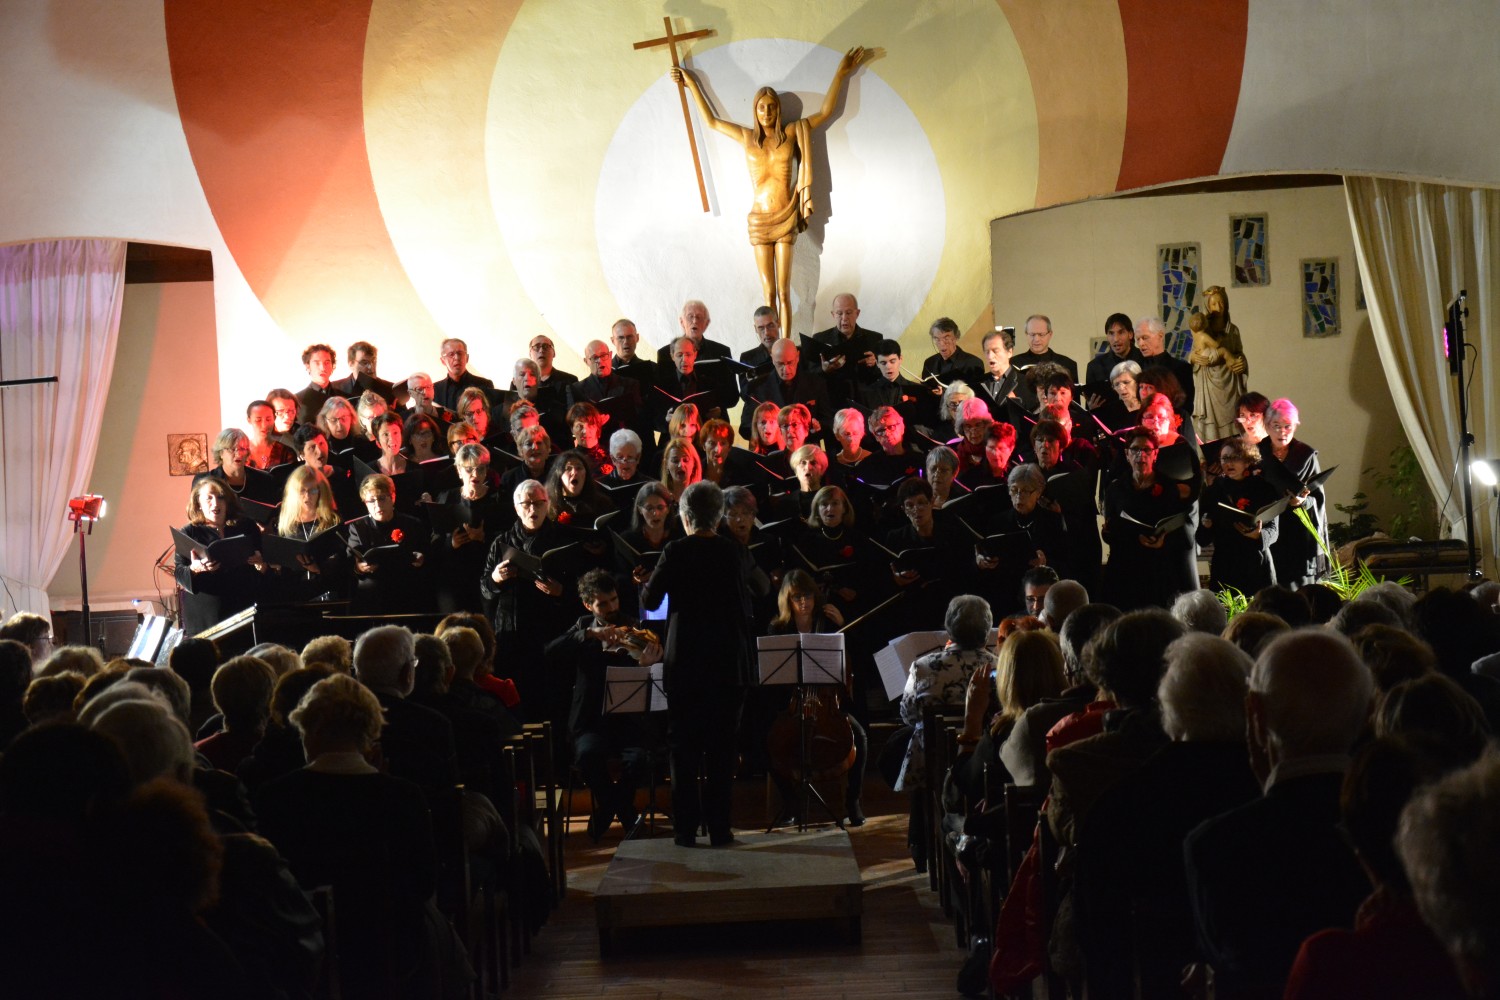 Choeur Symphonique performs in Cap d'Agdes